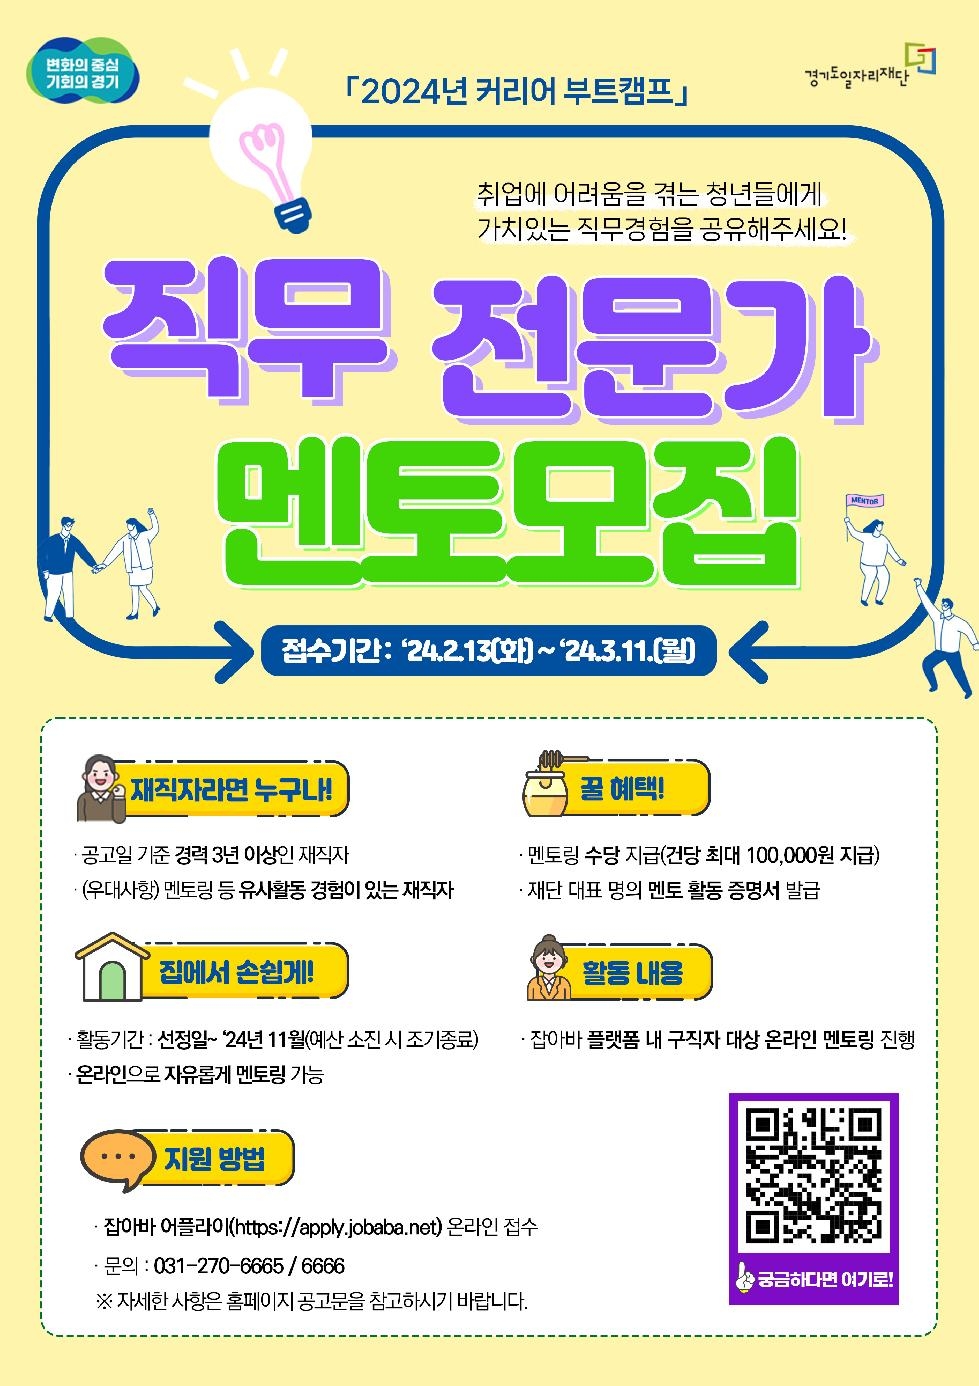 경기도,커리어 부트캠프 온라인 멘토링 참여자 80명  내달 11일까지 모집